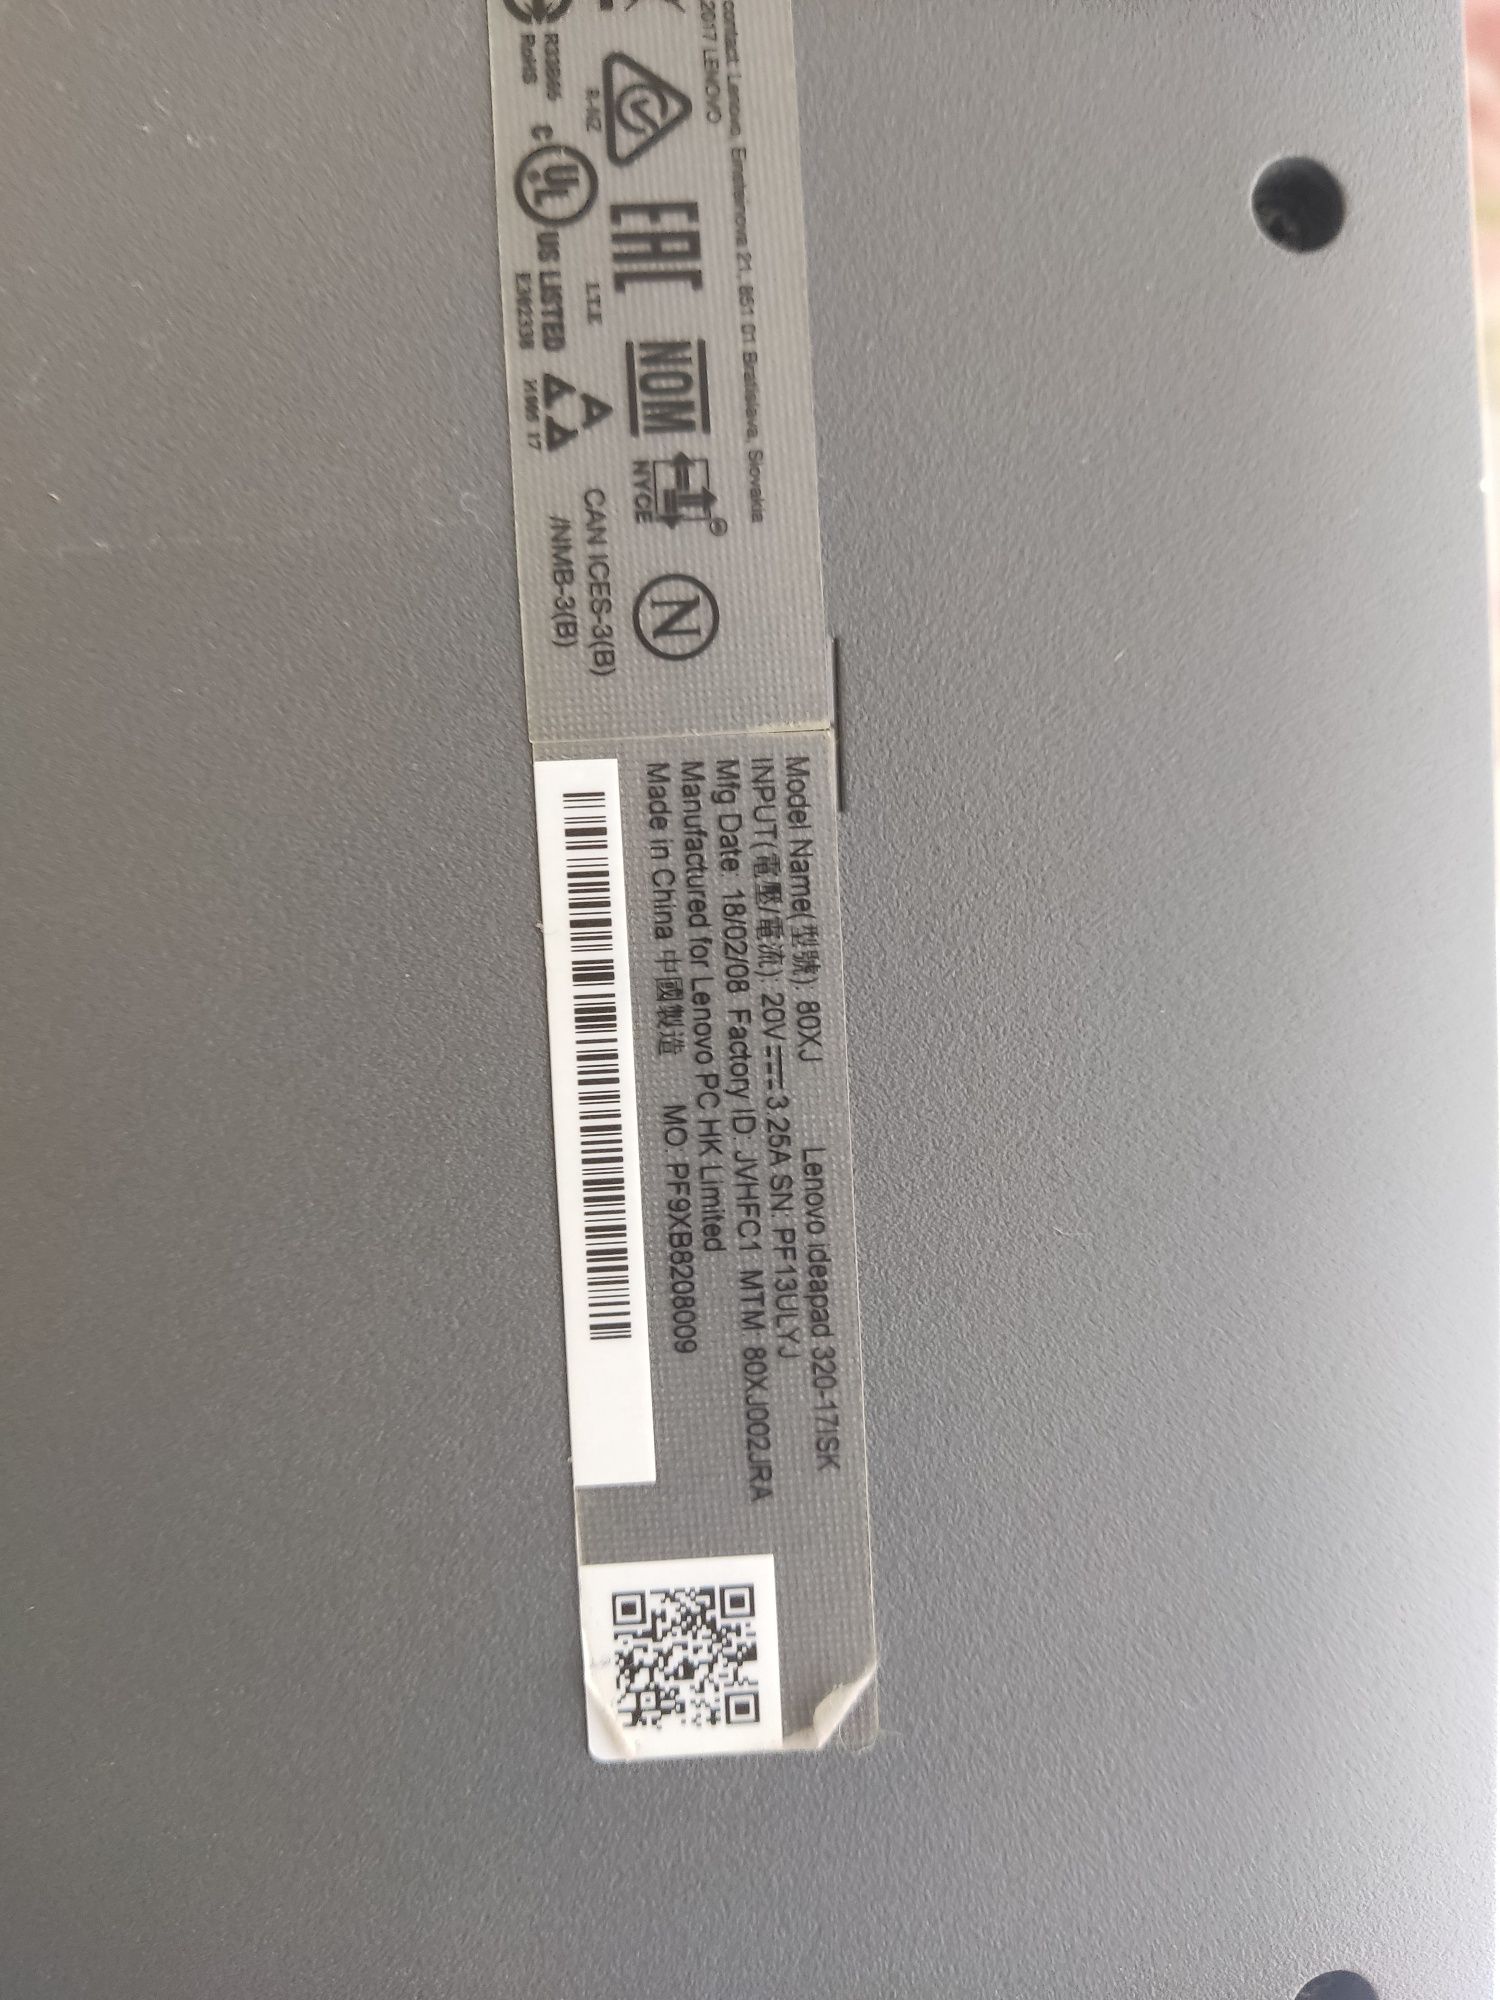 Lenovo 320-17 ISK i3-6006u/4GB/video 920 2gb/500gb hdd